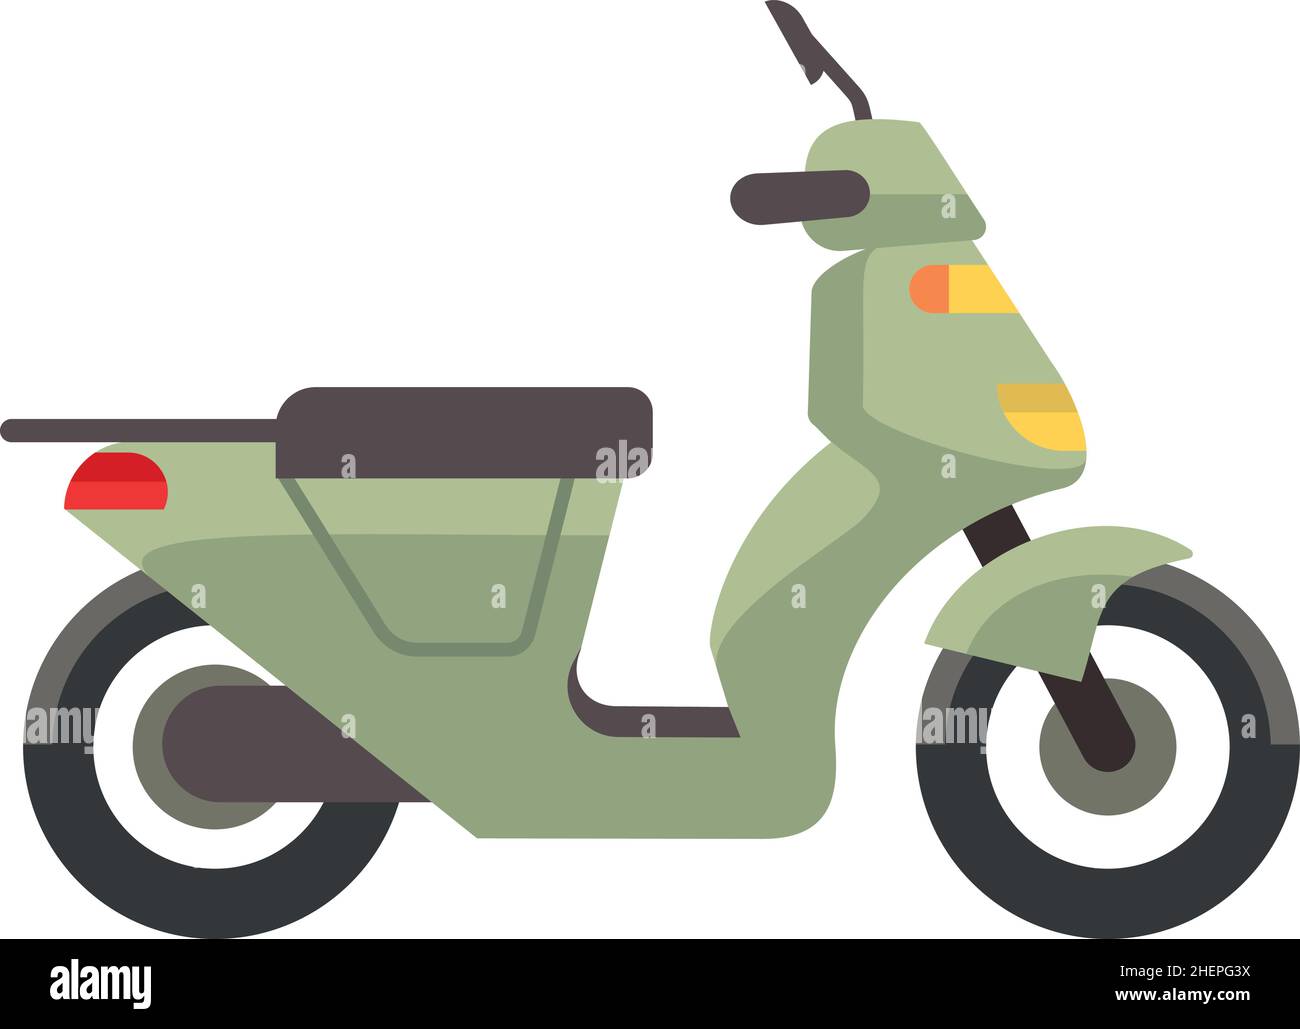 Vue latérale du scooter vert.Icône de vélo cyclomoté Illustration de Vecteur